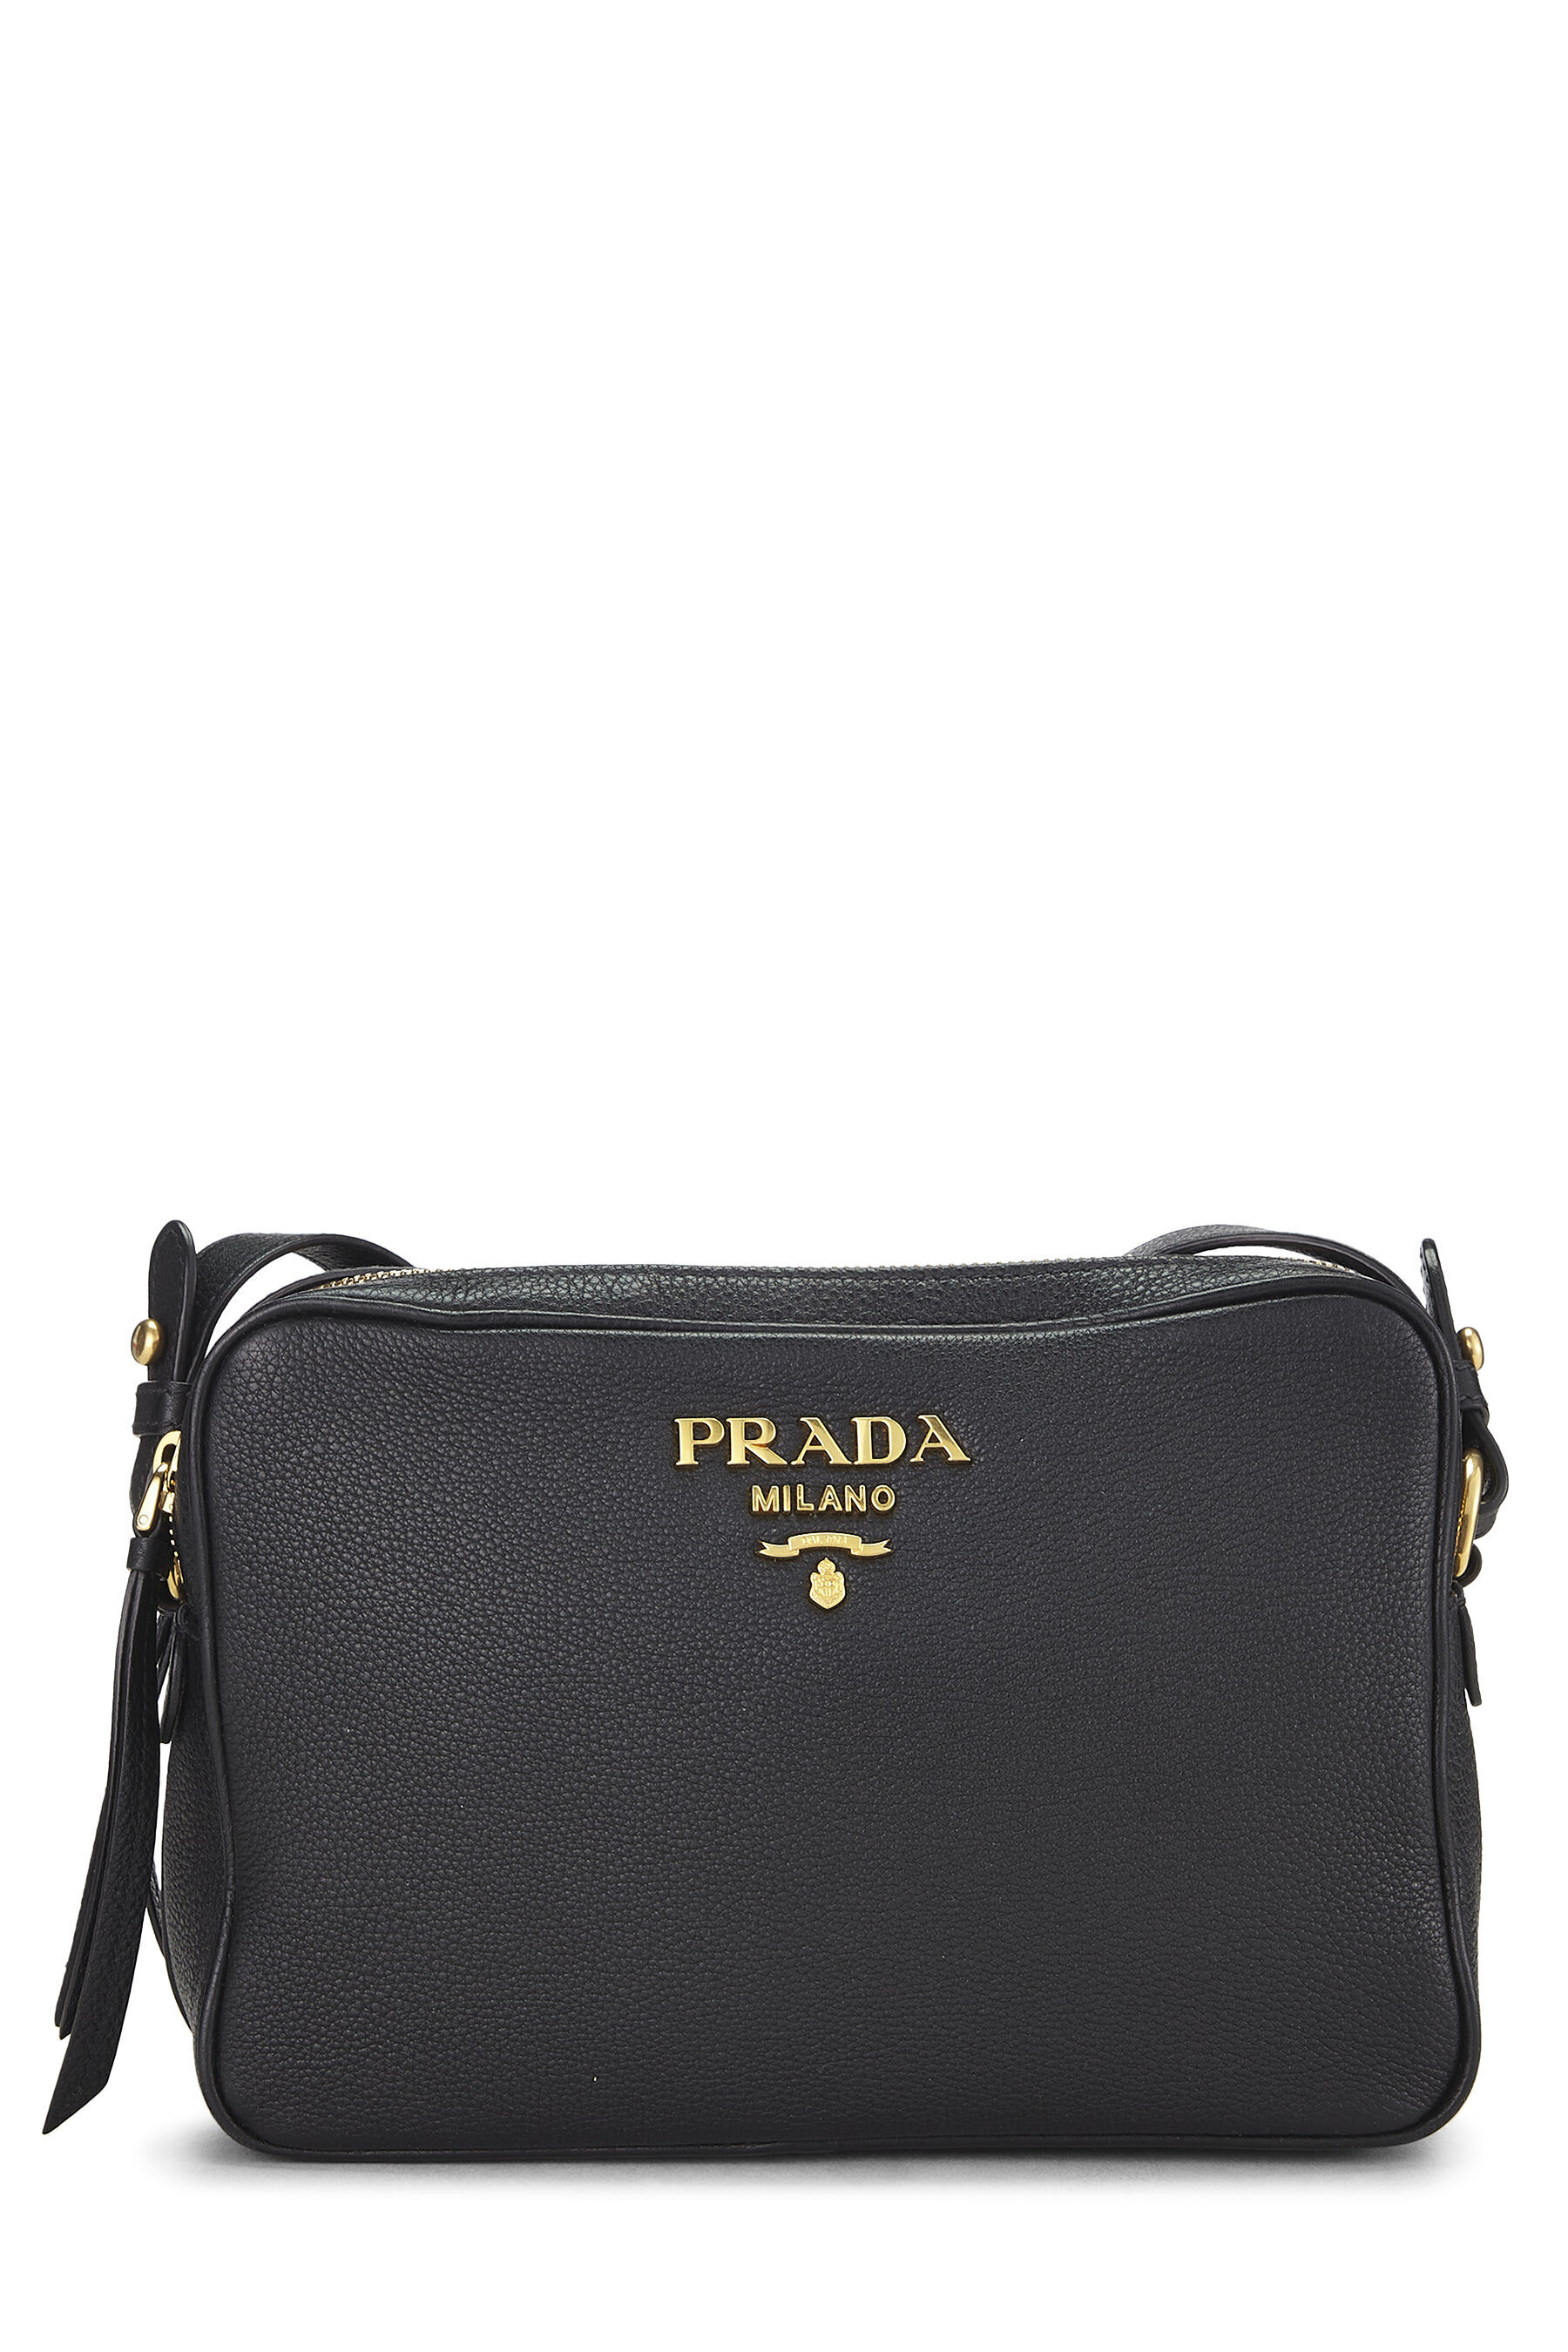 Prada Emblème Leather Shoulder Bag - Black | Editorialist